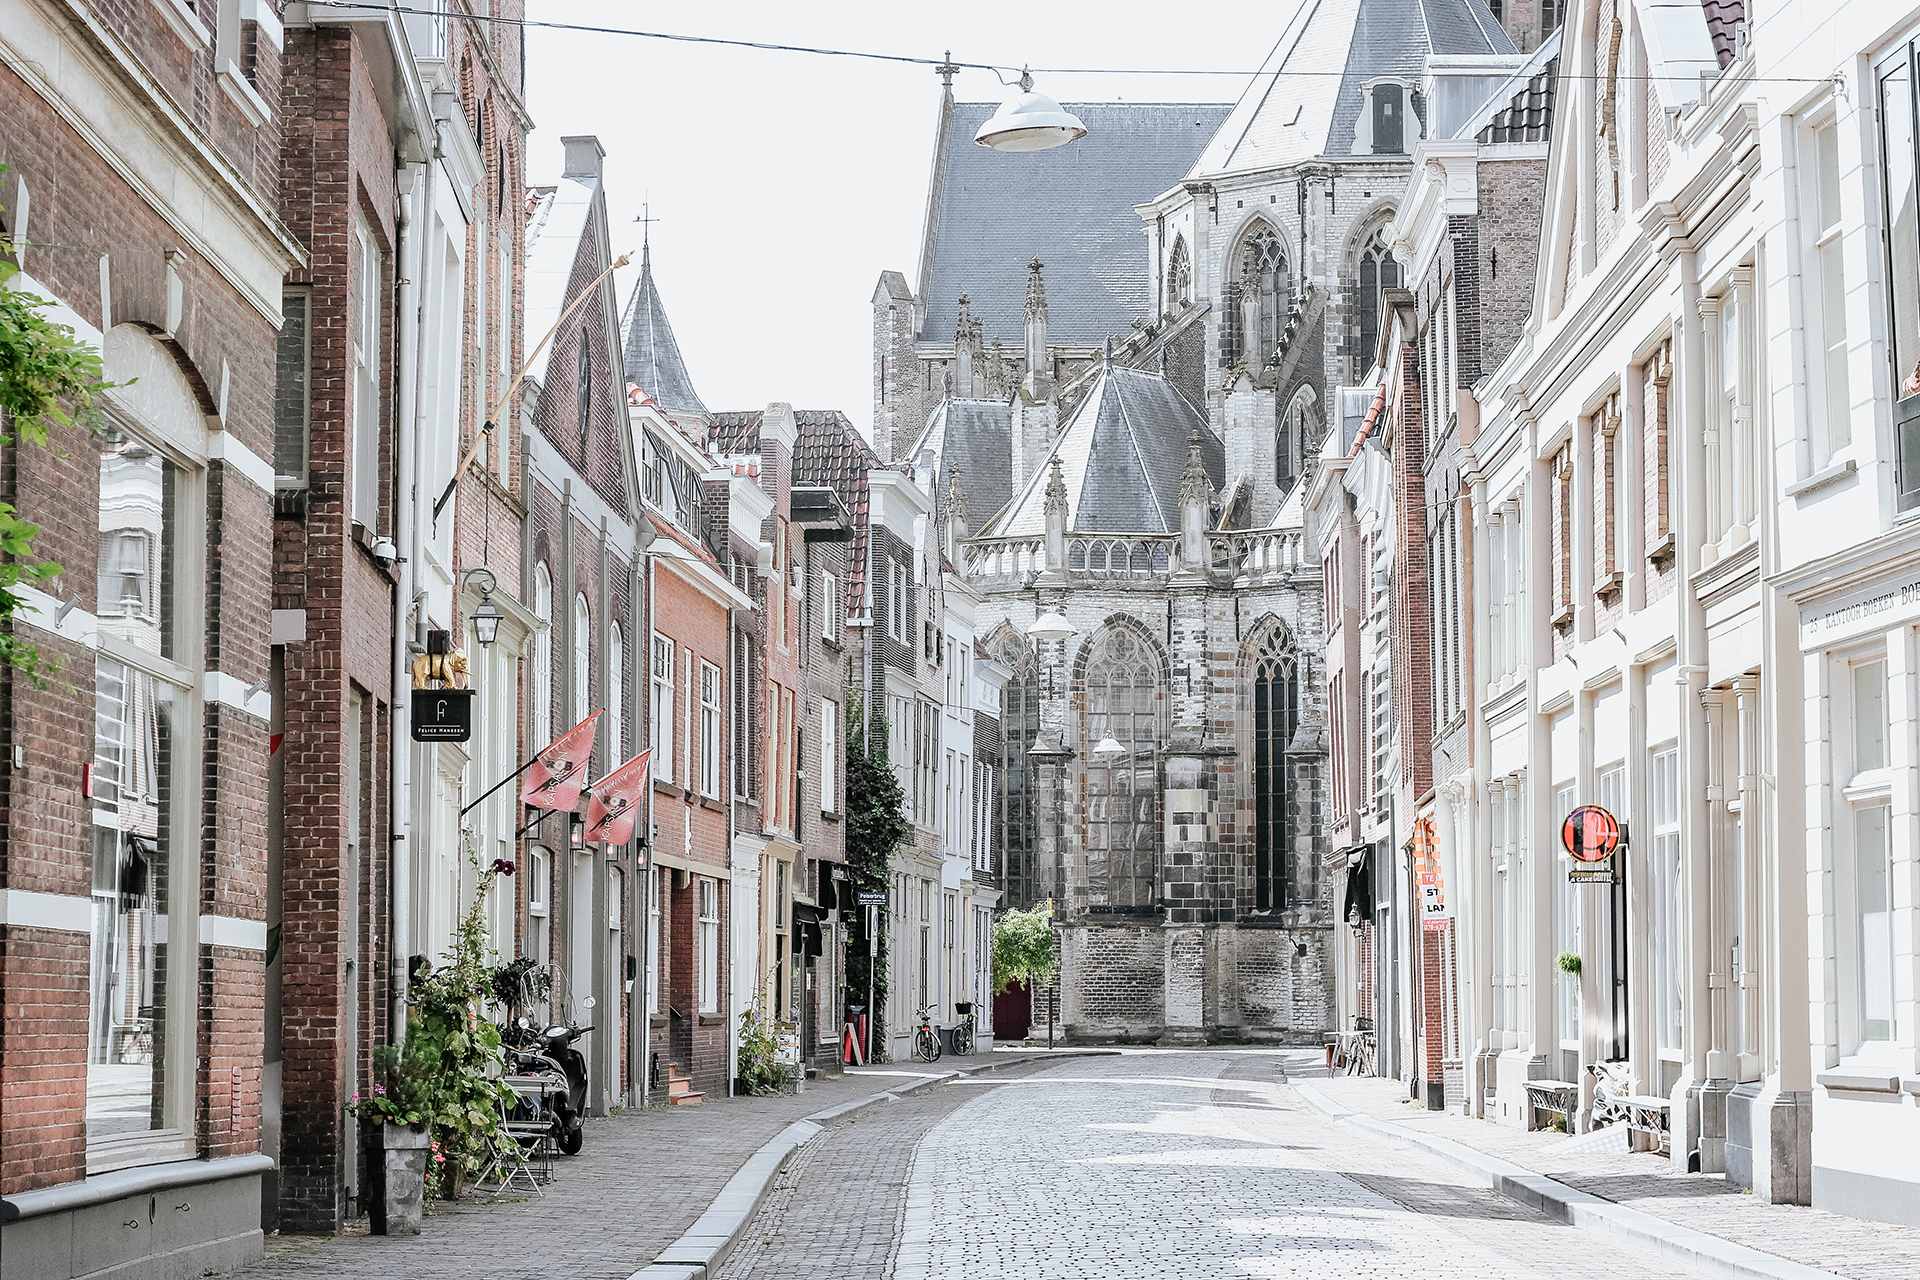 Vastgoed Dordrecht staat samen voor sterke binnenstad